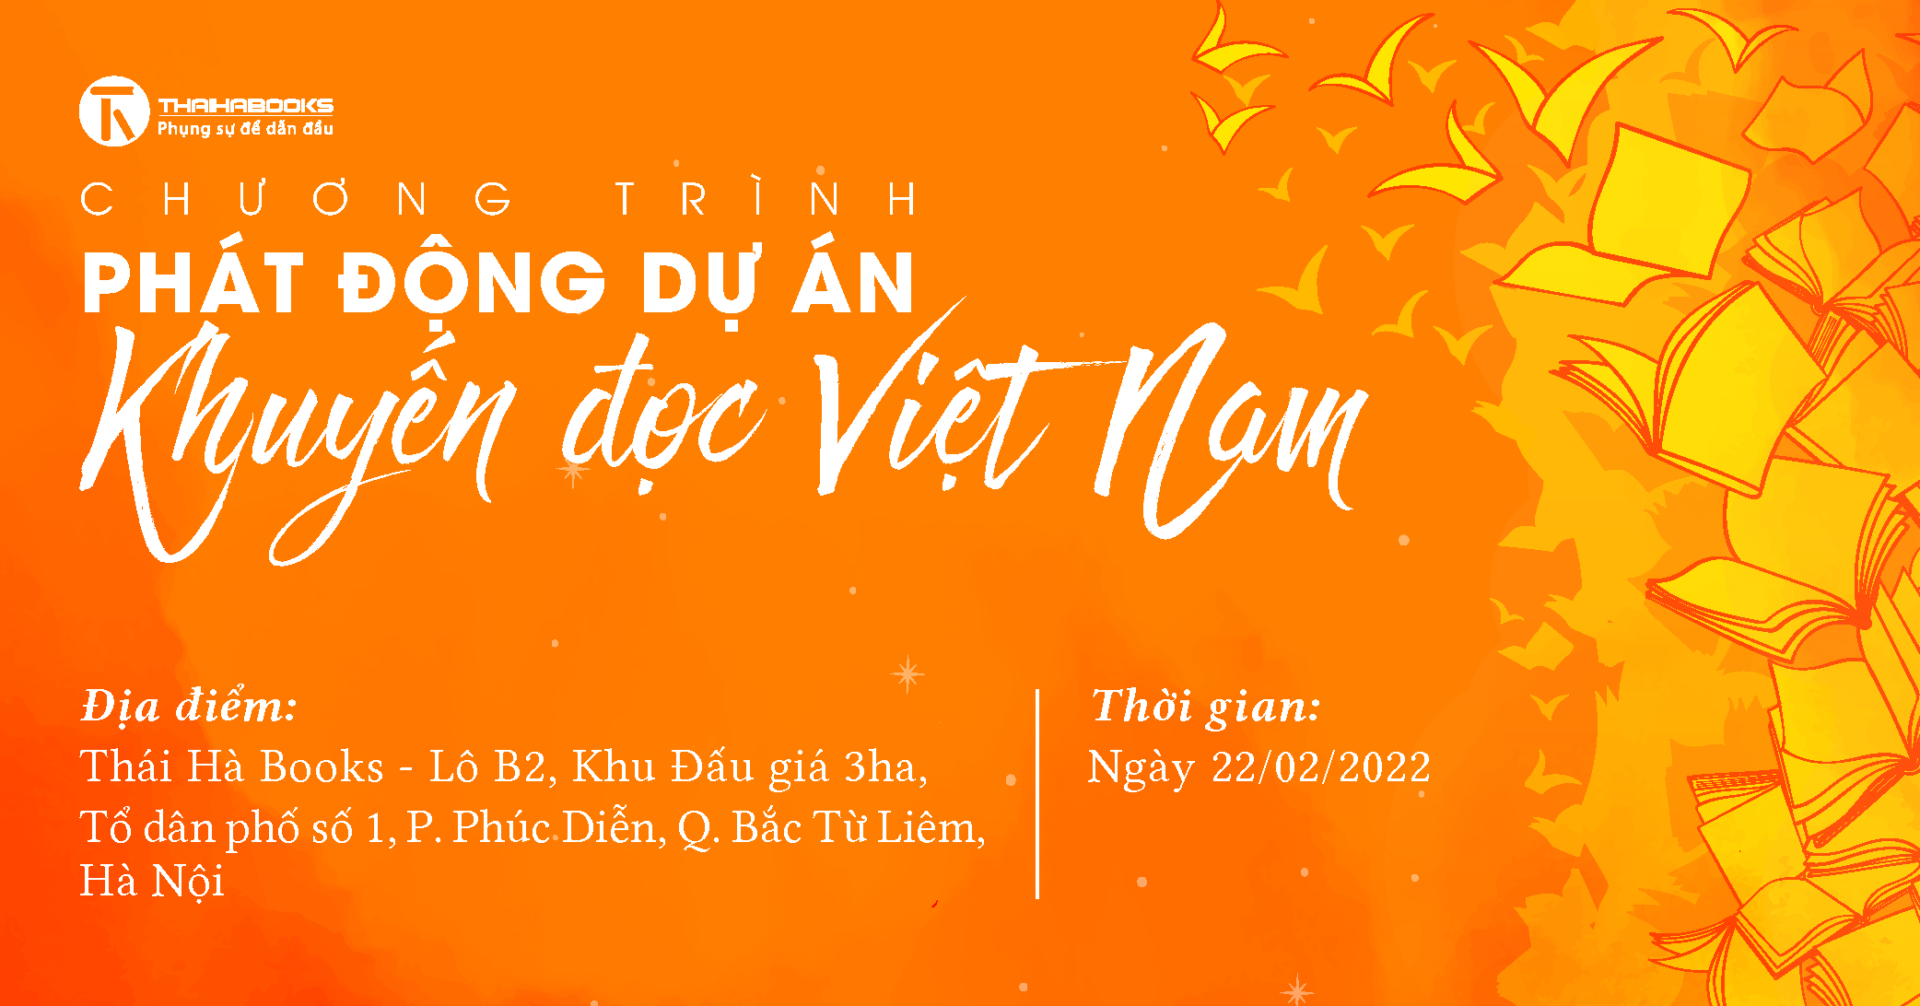 22.02.2022: Chương trình Phát động Dự án Khuyến đọc Việt Nam